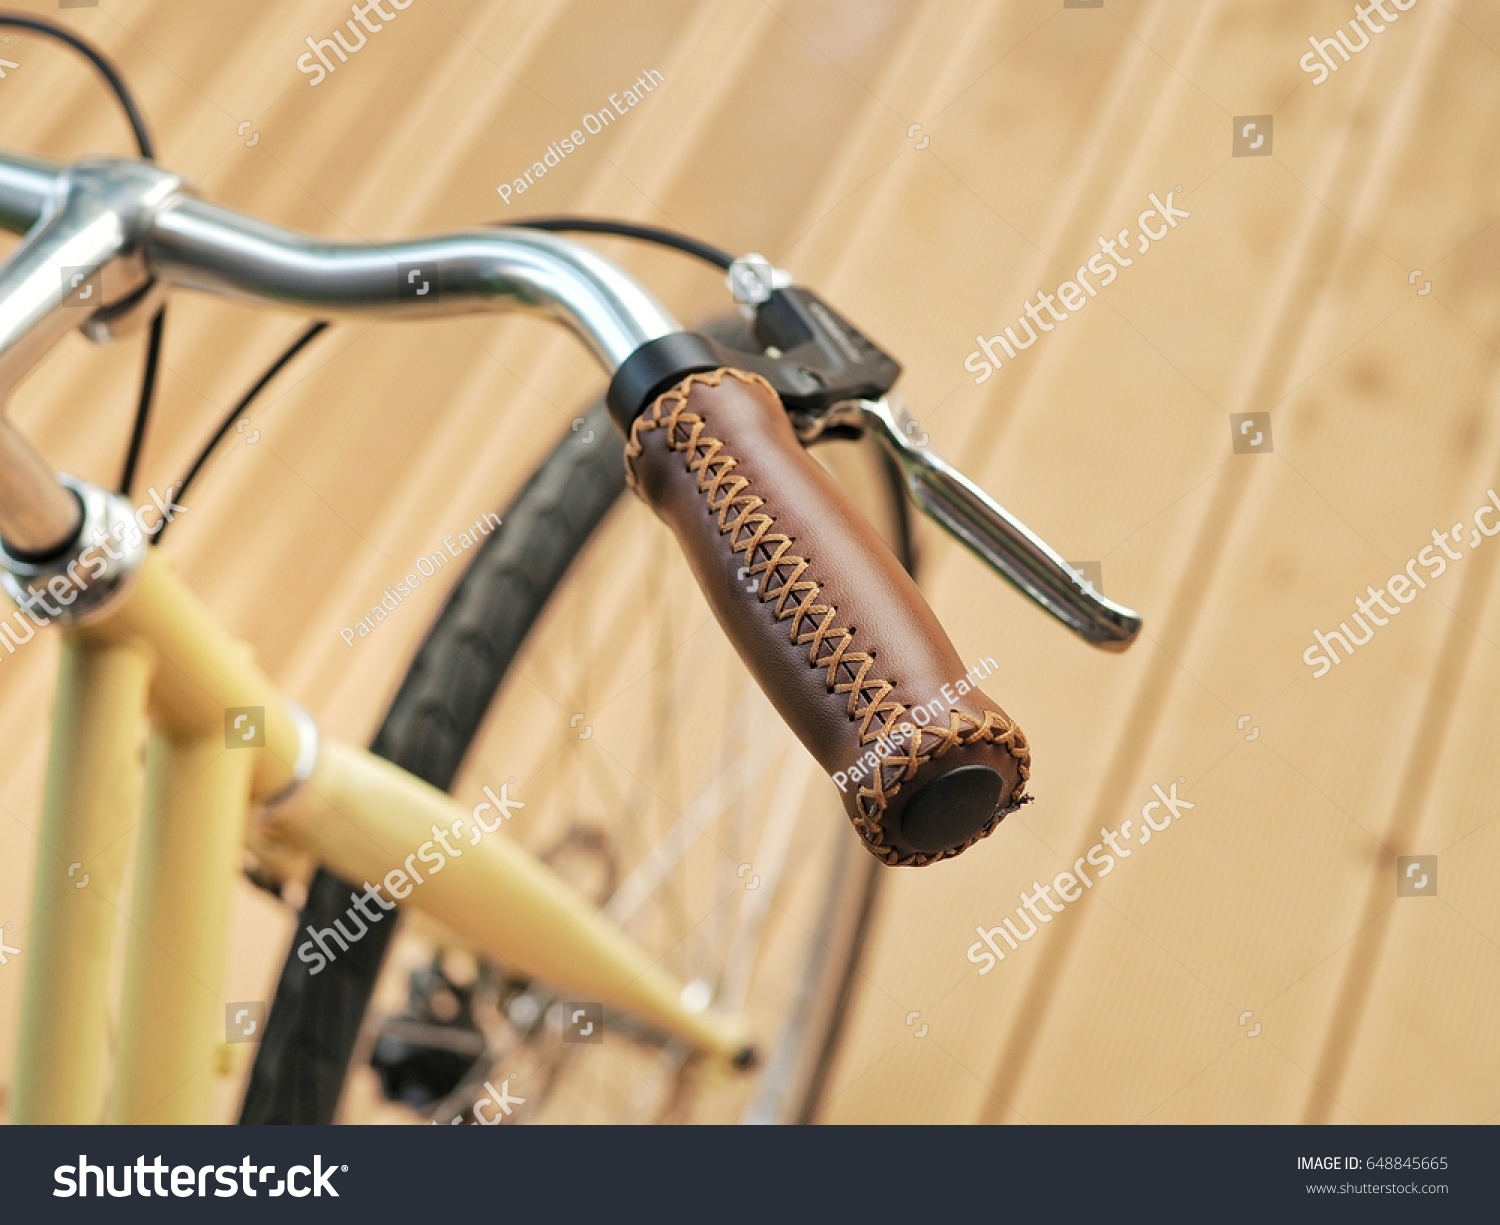 leather bike handle grips